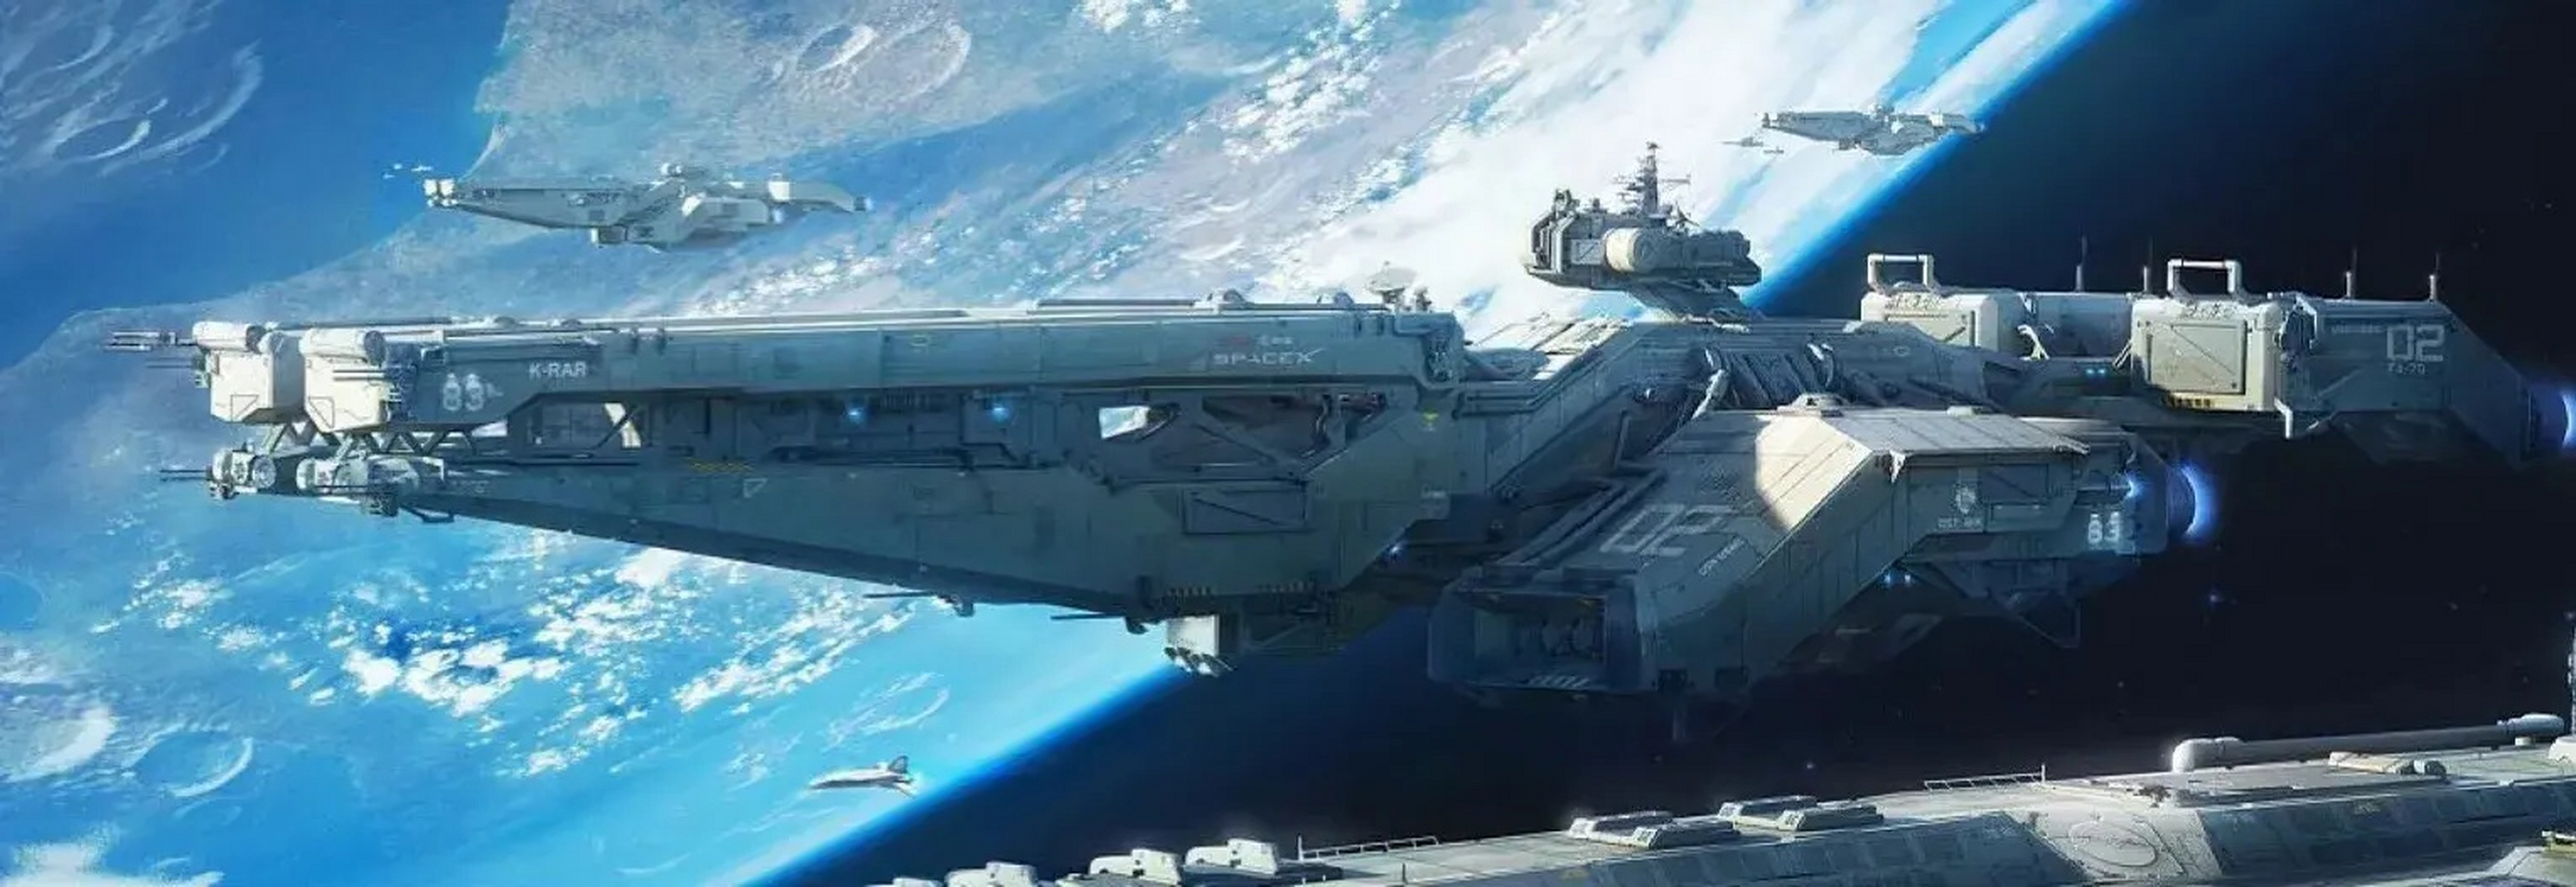 未来科幻太空母舰舰队图片